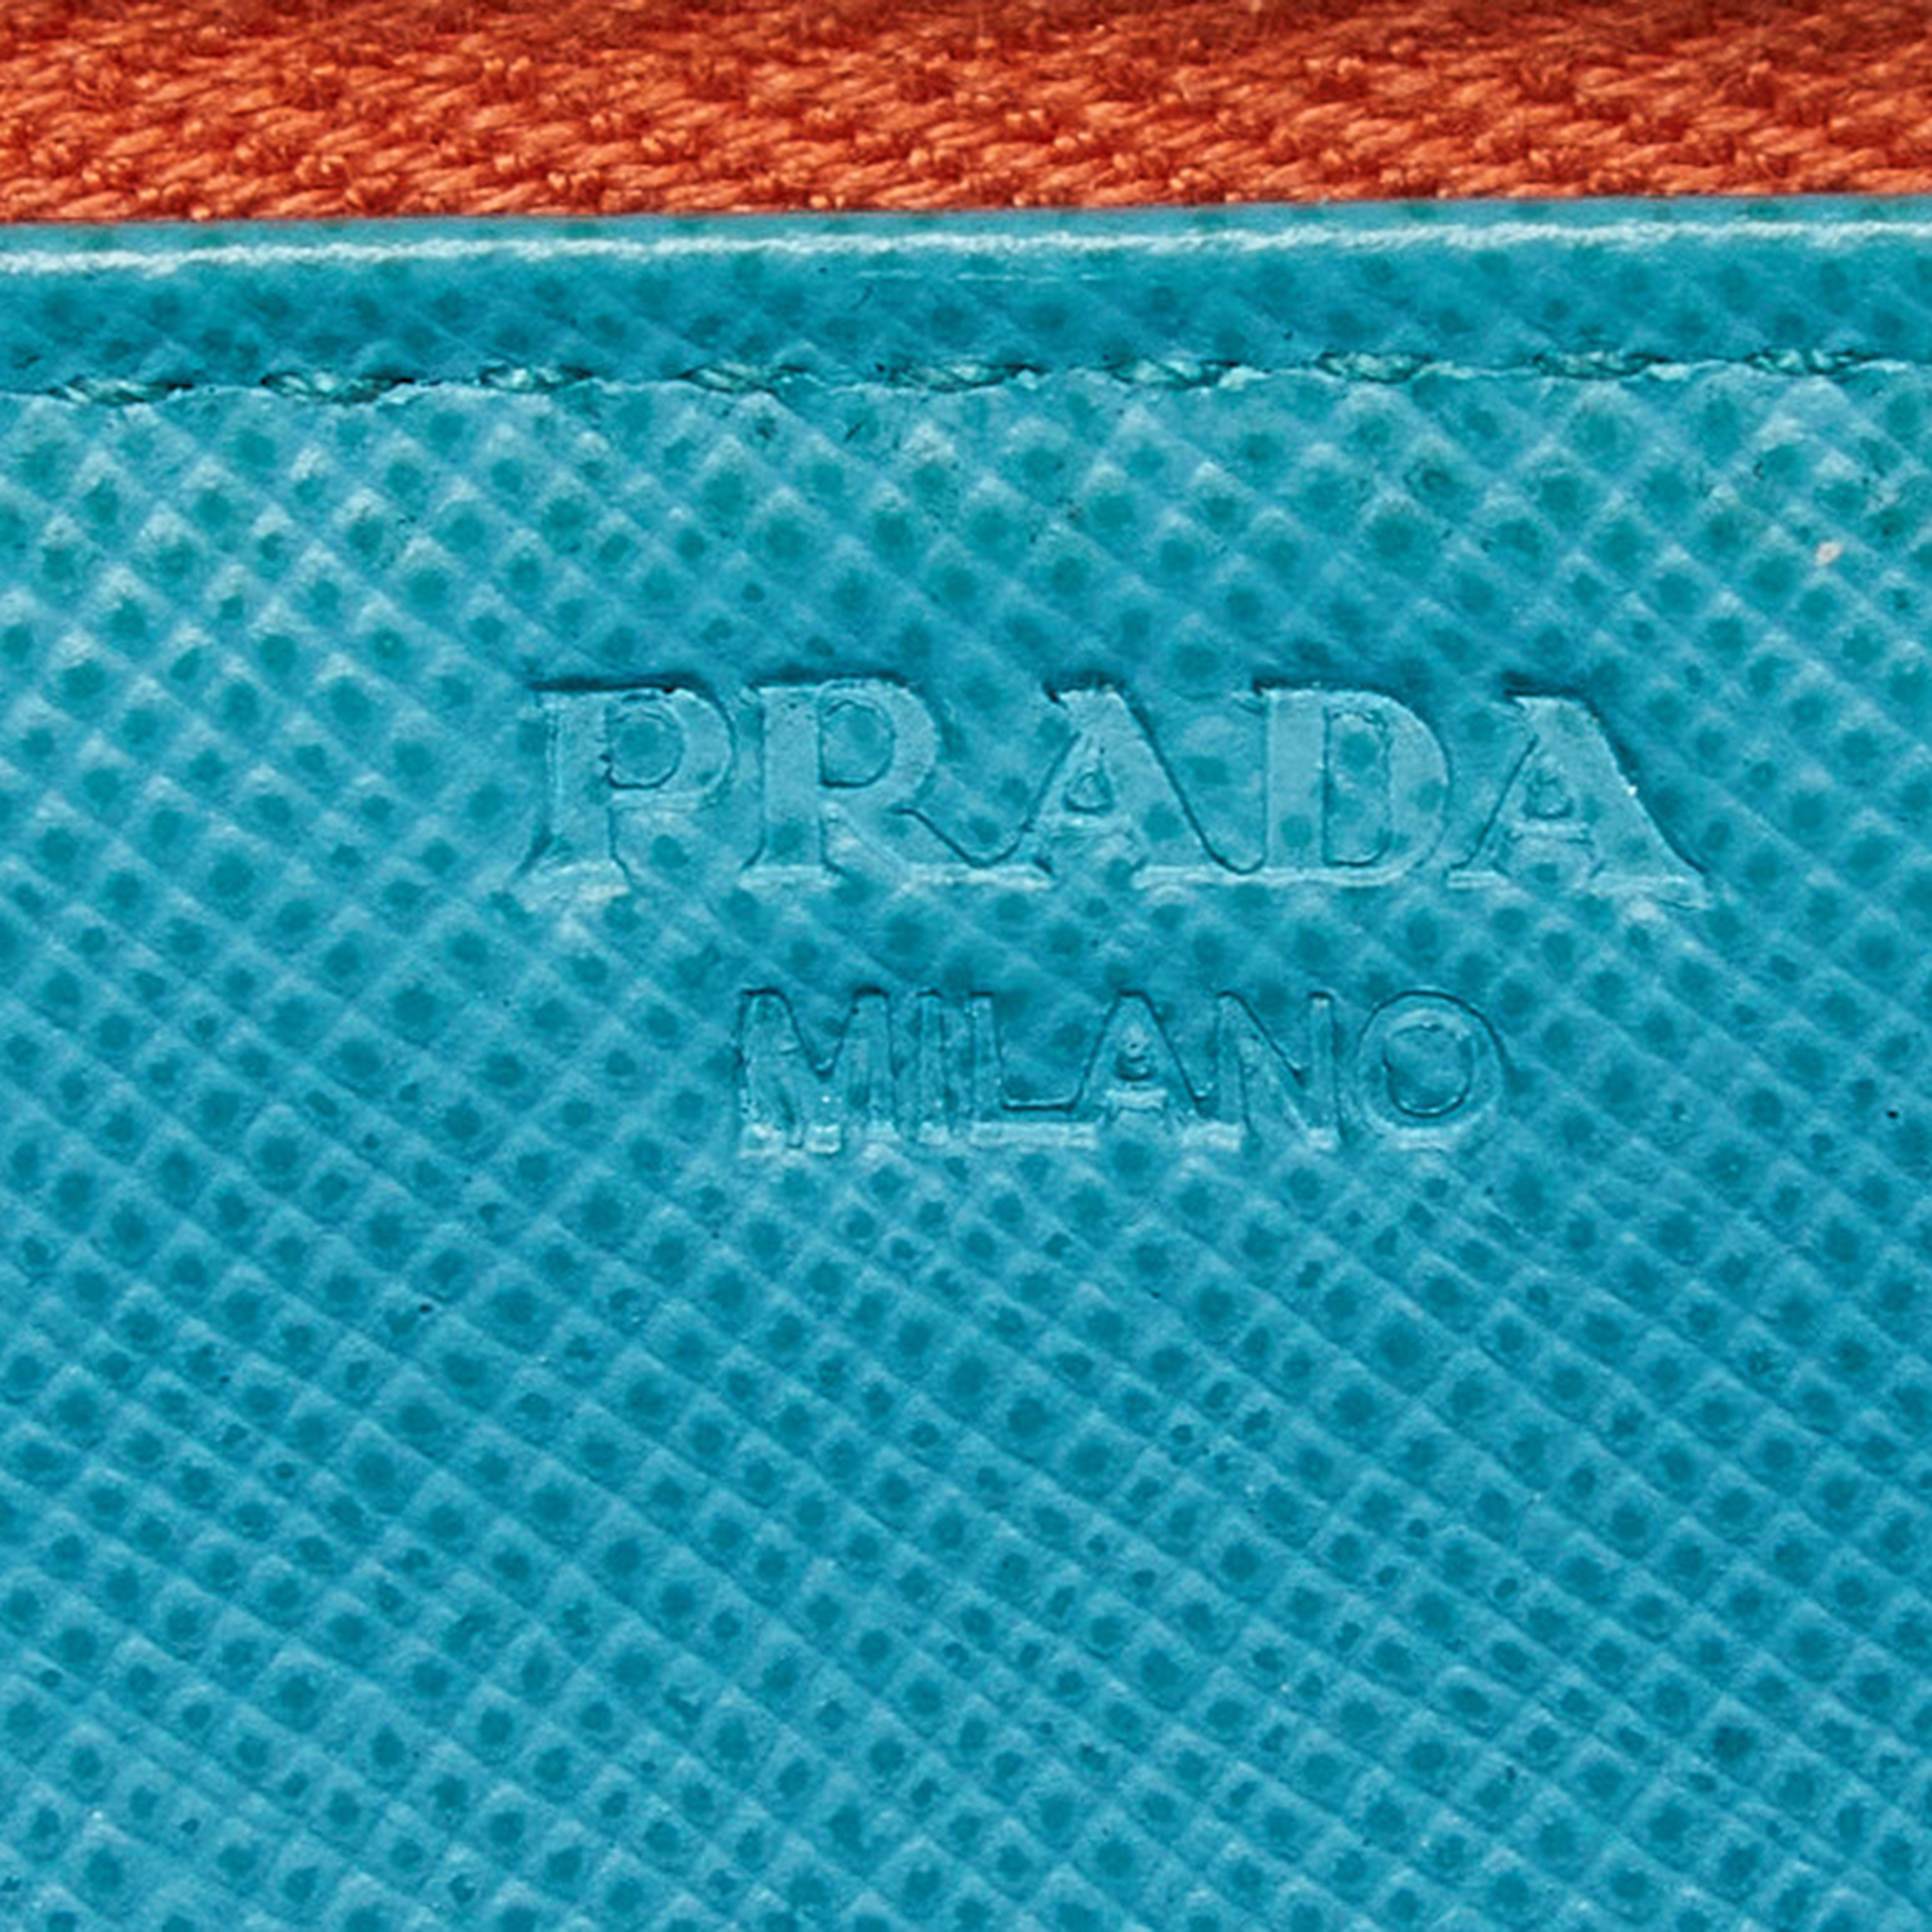 Prada Orange/Blue Saffiano Metal Zip Around Wallet